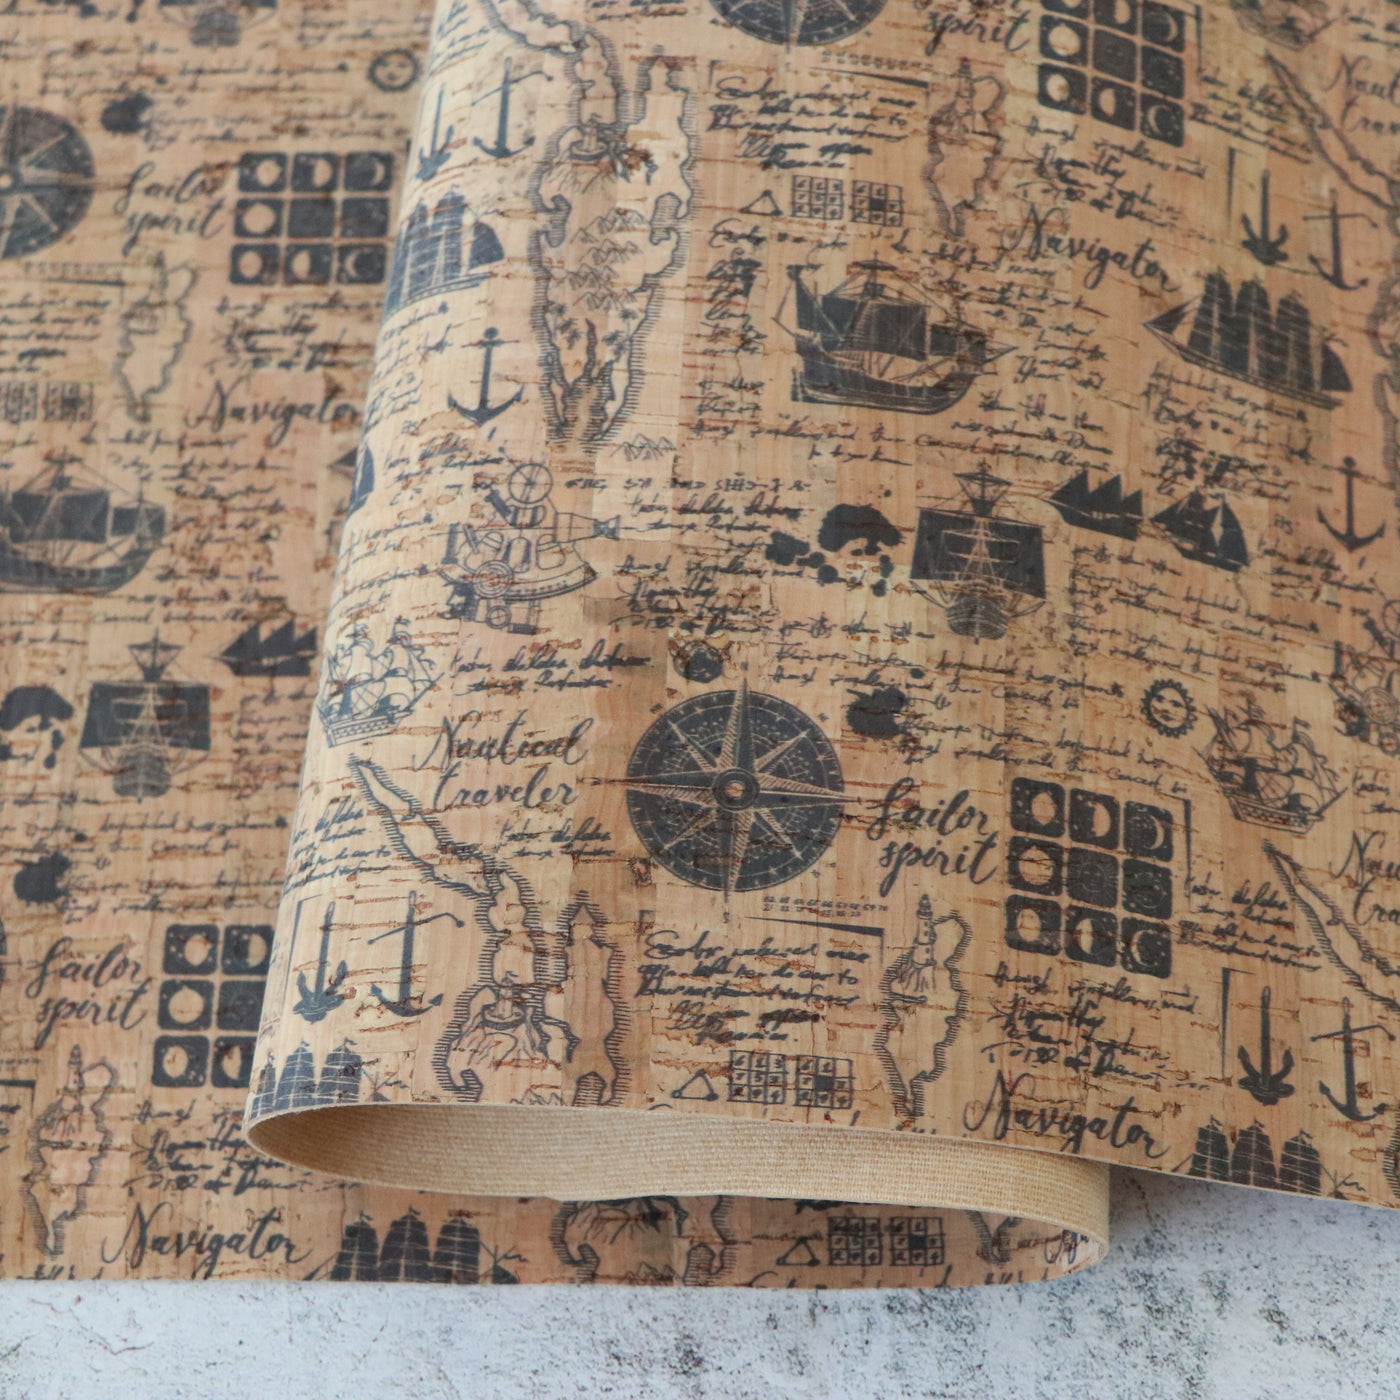 Nautical Traveler Cork Fabric